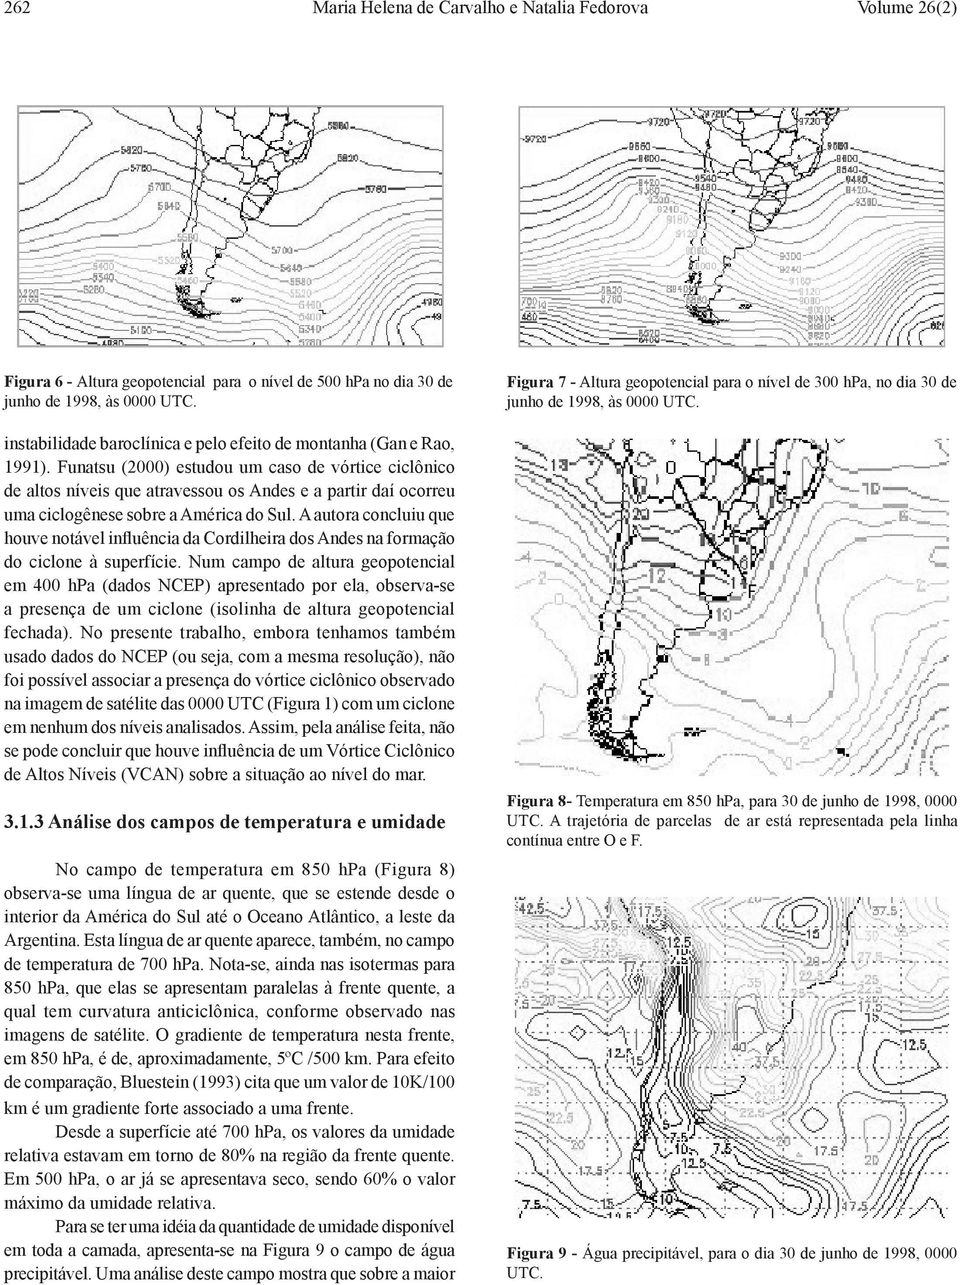 Funatsu (2000) estudou um caso de vórtice ciclônico de altos níveis que atravessou os Andes e a partir daí ocorreu uma ciclogênese sobre a América do Sul.